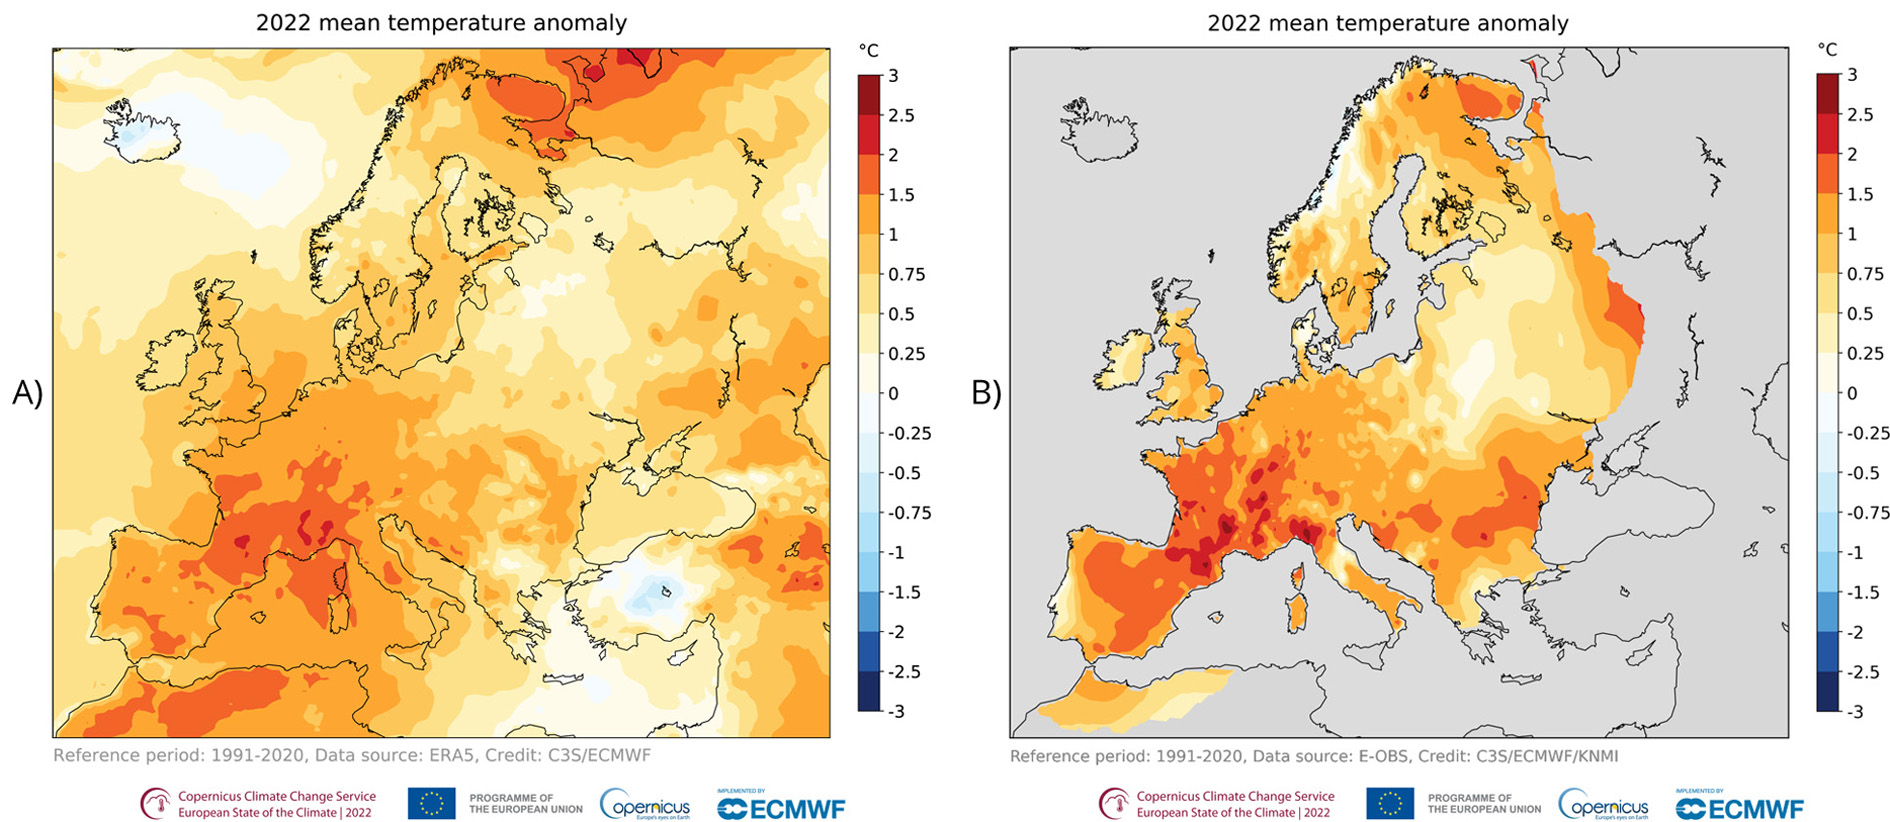 Roczna anomalia temperatury powietrza w Europie w 2022 roku w odniesieniu do średniej z wielolecia 1991-2020: a) dane satelitarne ERA5, b) dane z obserwacji naziemnych. Przez cały rok temperatury w niemal całej Europie były powyżej średniej. Najwyższe anomalie dodatnie (do 2,5°C) wystąpiły na niektórych obszarach południowo-zachodniej części kontynentu, niewielkie anomalie ujemne (–0,75°C) w Turcji i Islandii.